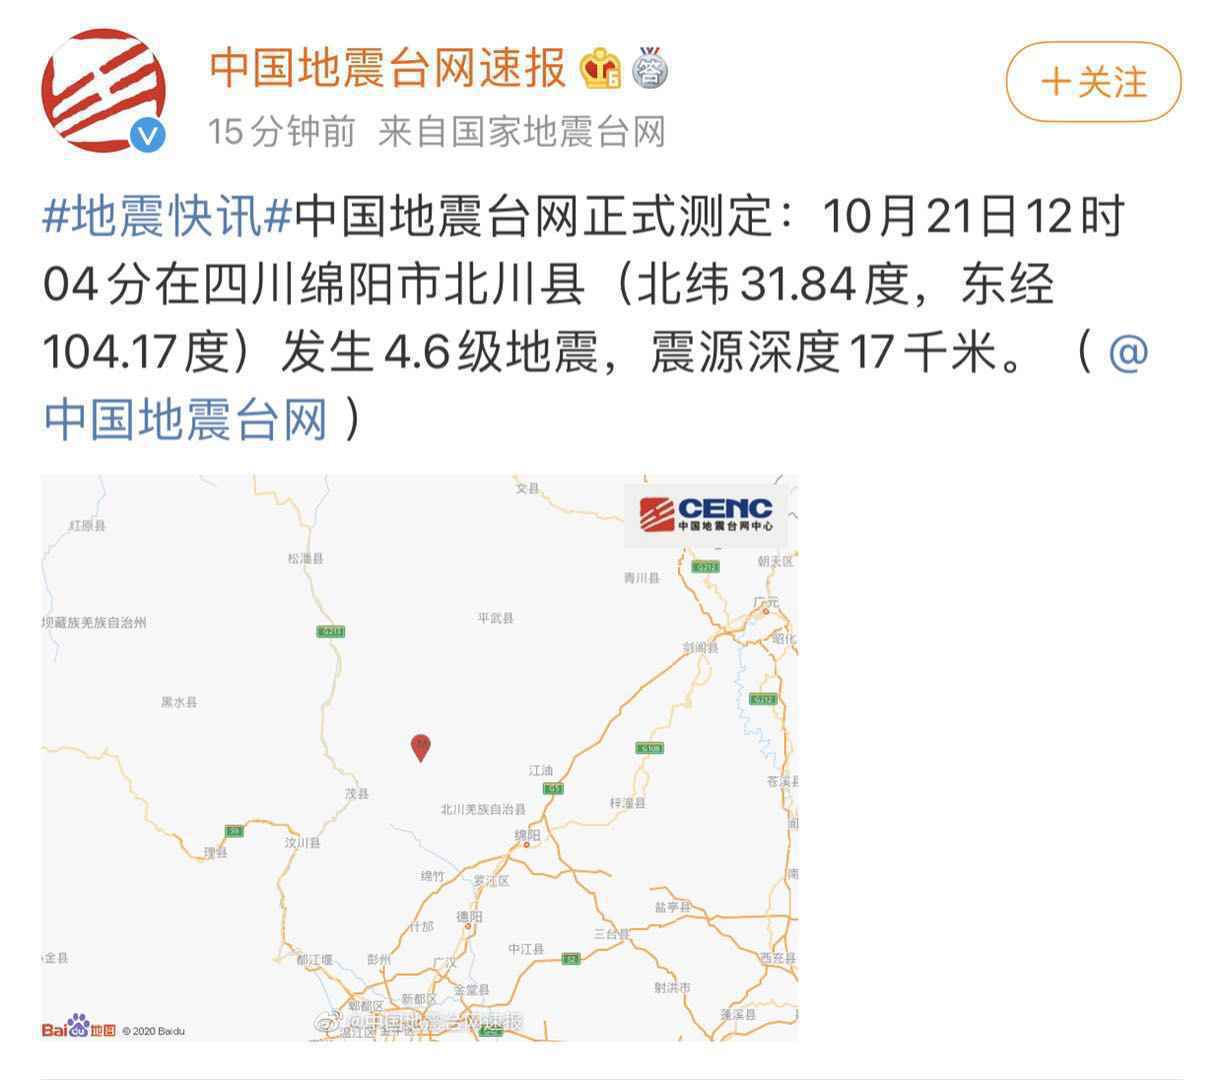 四川绵阳北川县发生4.6级地震震源深度17千米